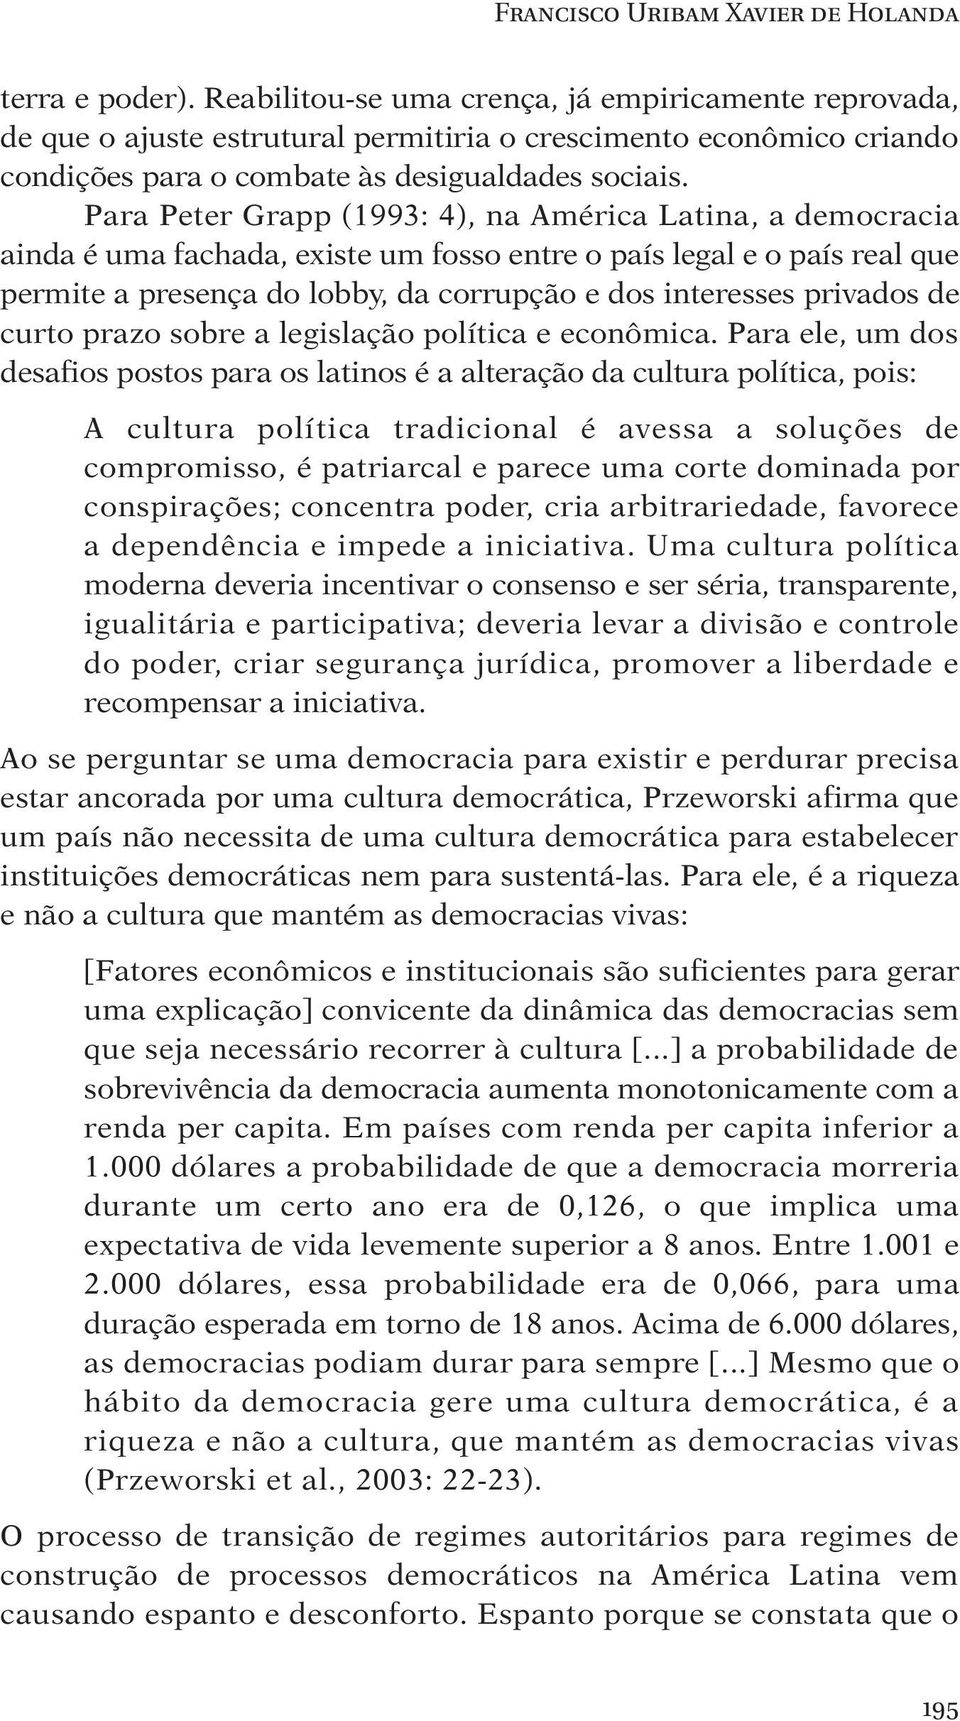 Para Peter Grapp (1993: 4), na América Latina, a democracia ainda é uma fachada, existe um fosso entre o país legal e o país real que permite a presença do lobby, da corrupção e dos interesses